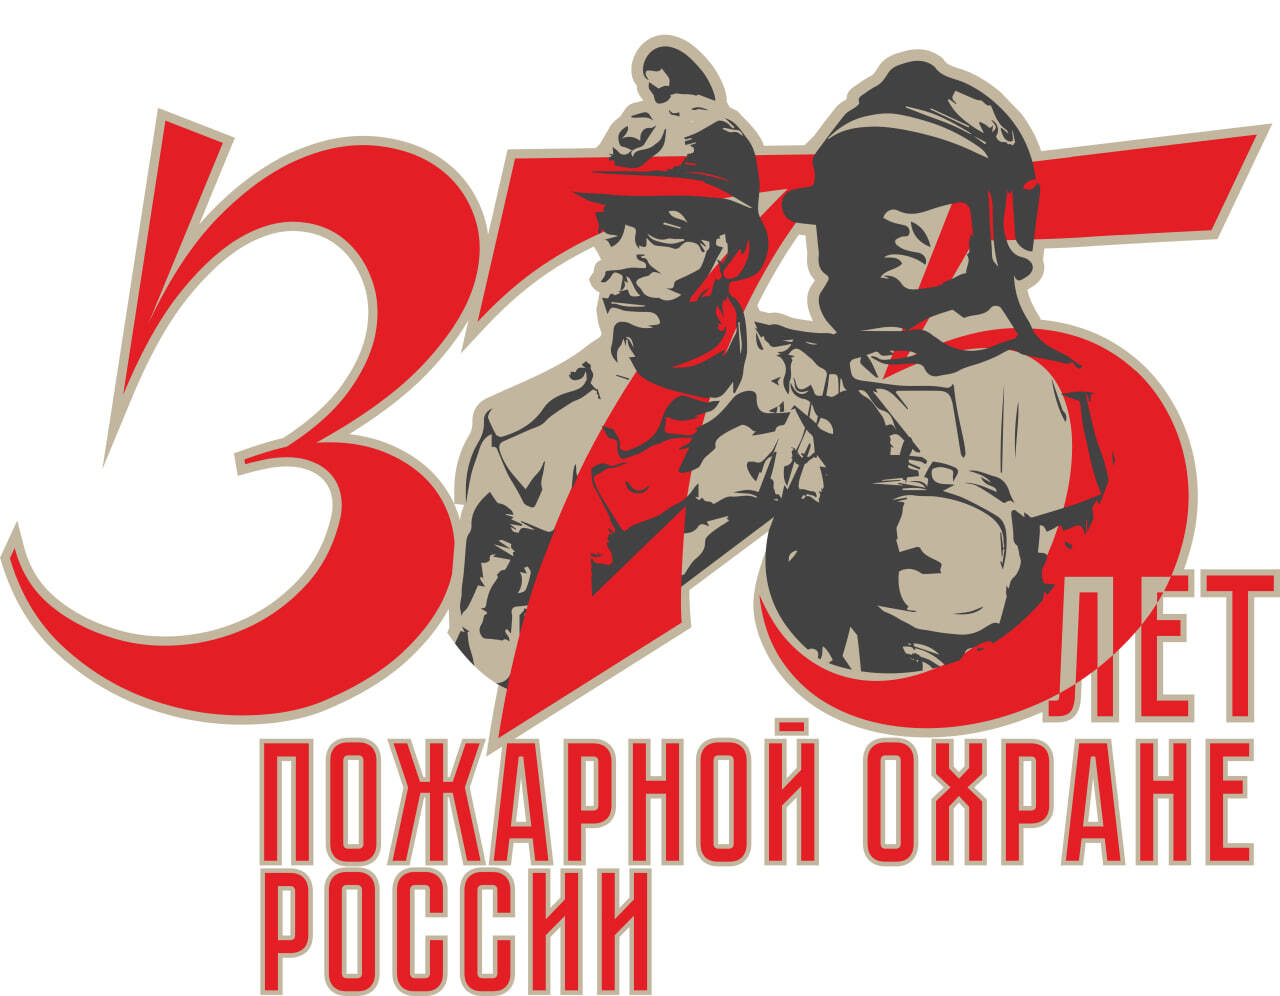 30 апреля пожарной охране россии